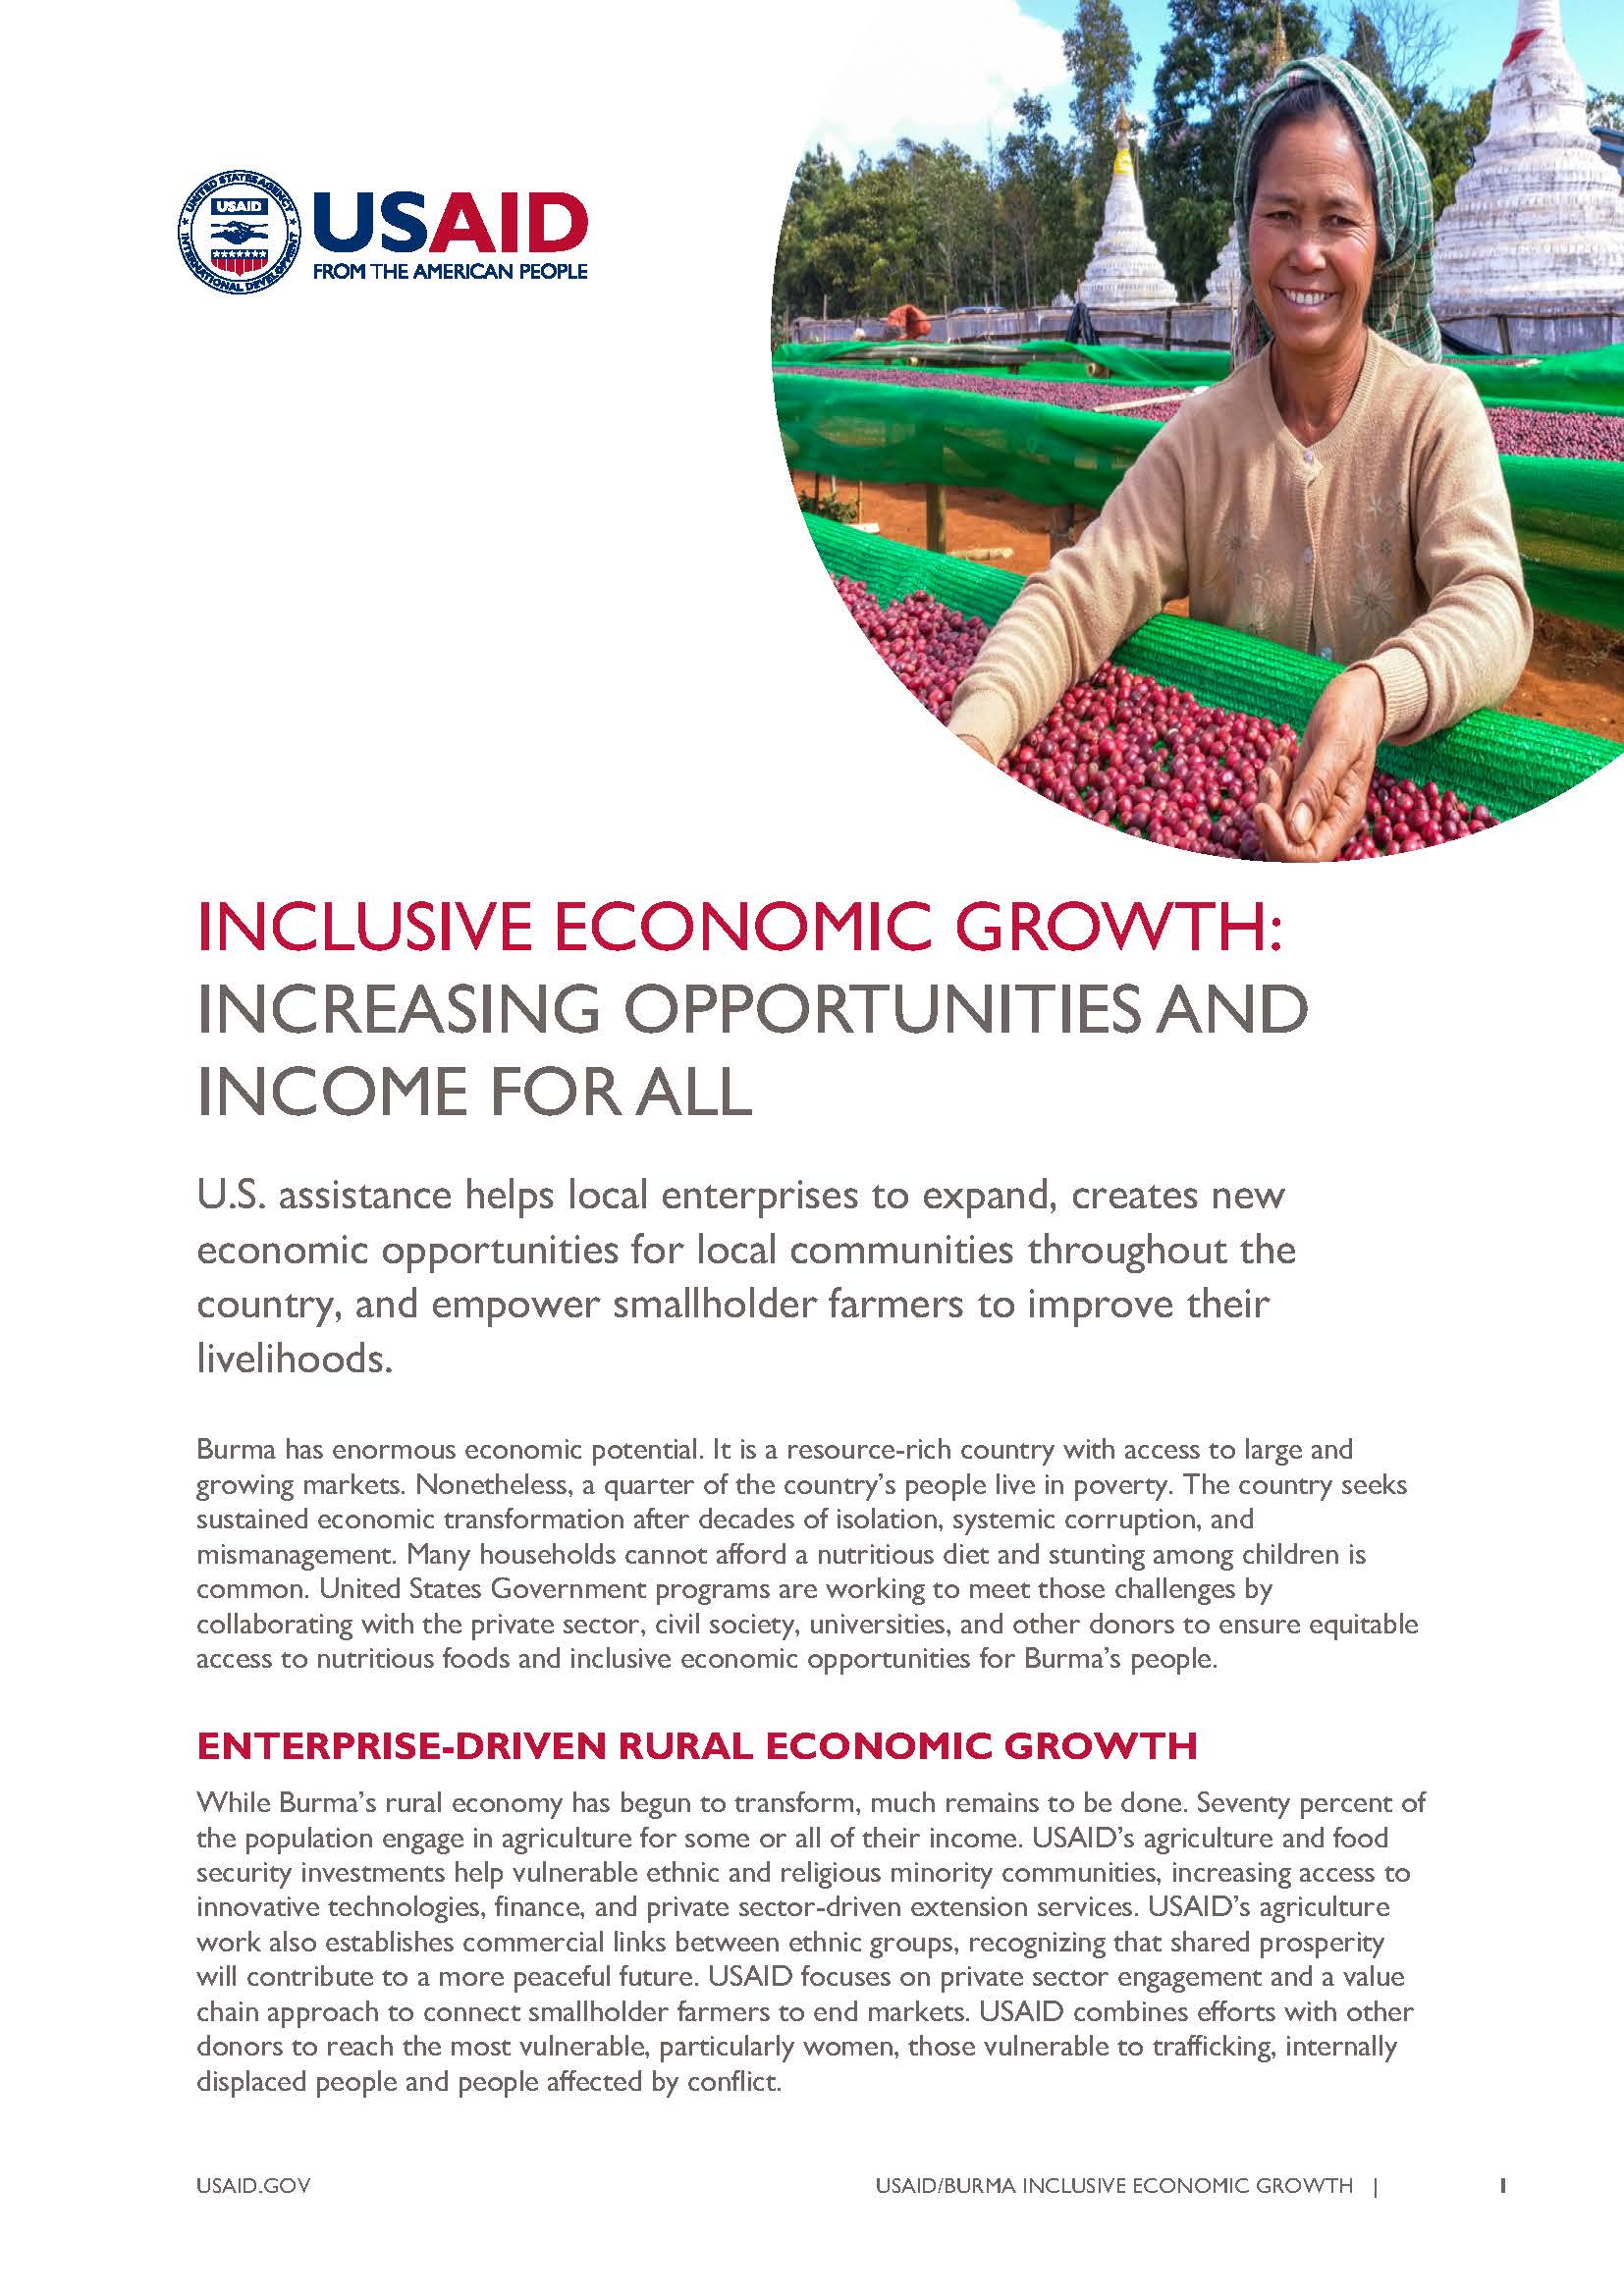 USAID Burma Economic Growth fact sheet October 2019